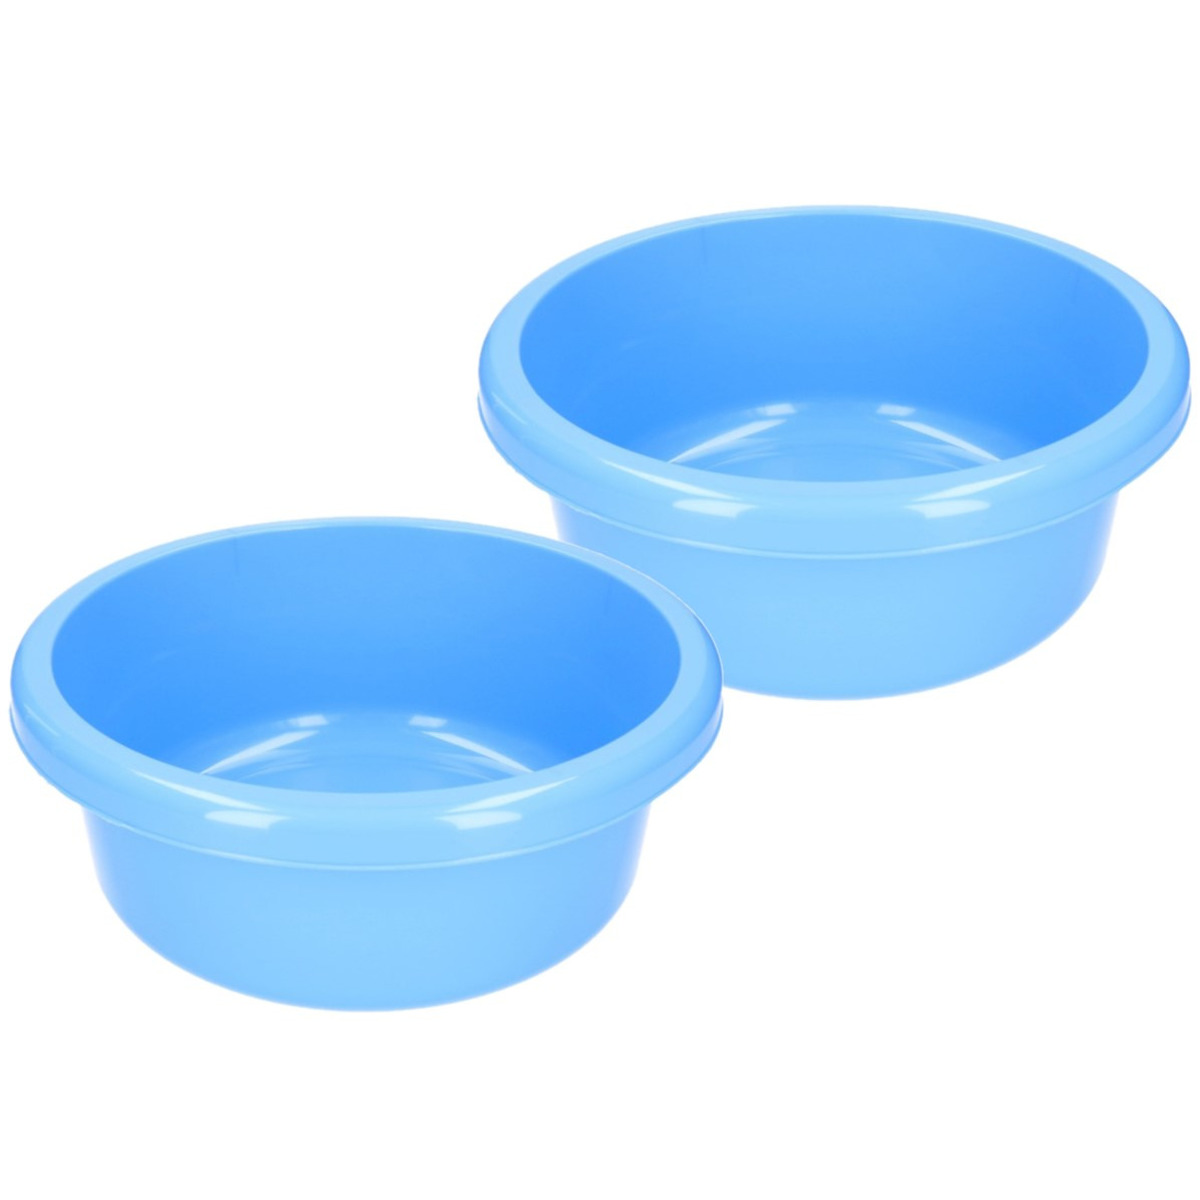 Set van 3x stuks camping afwasteilen-afwasbakken blauw rond 6,2 liter